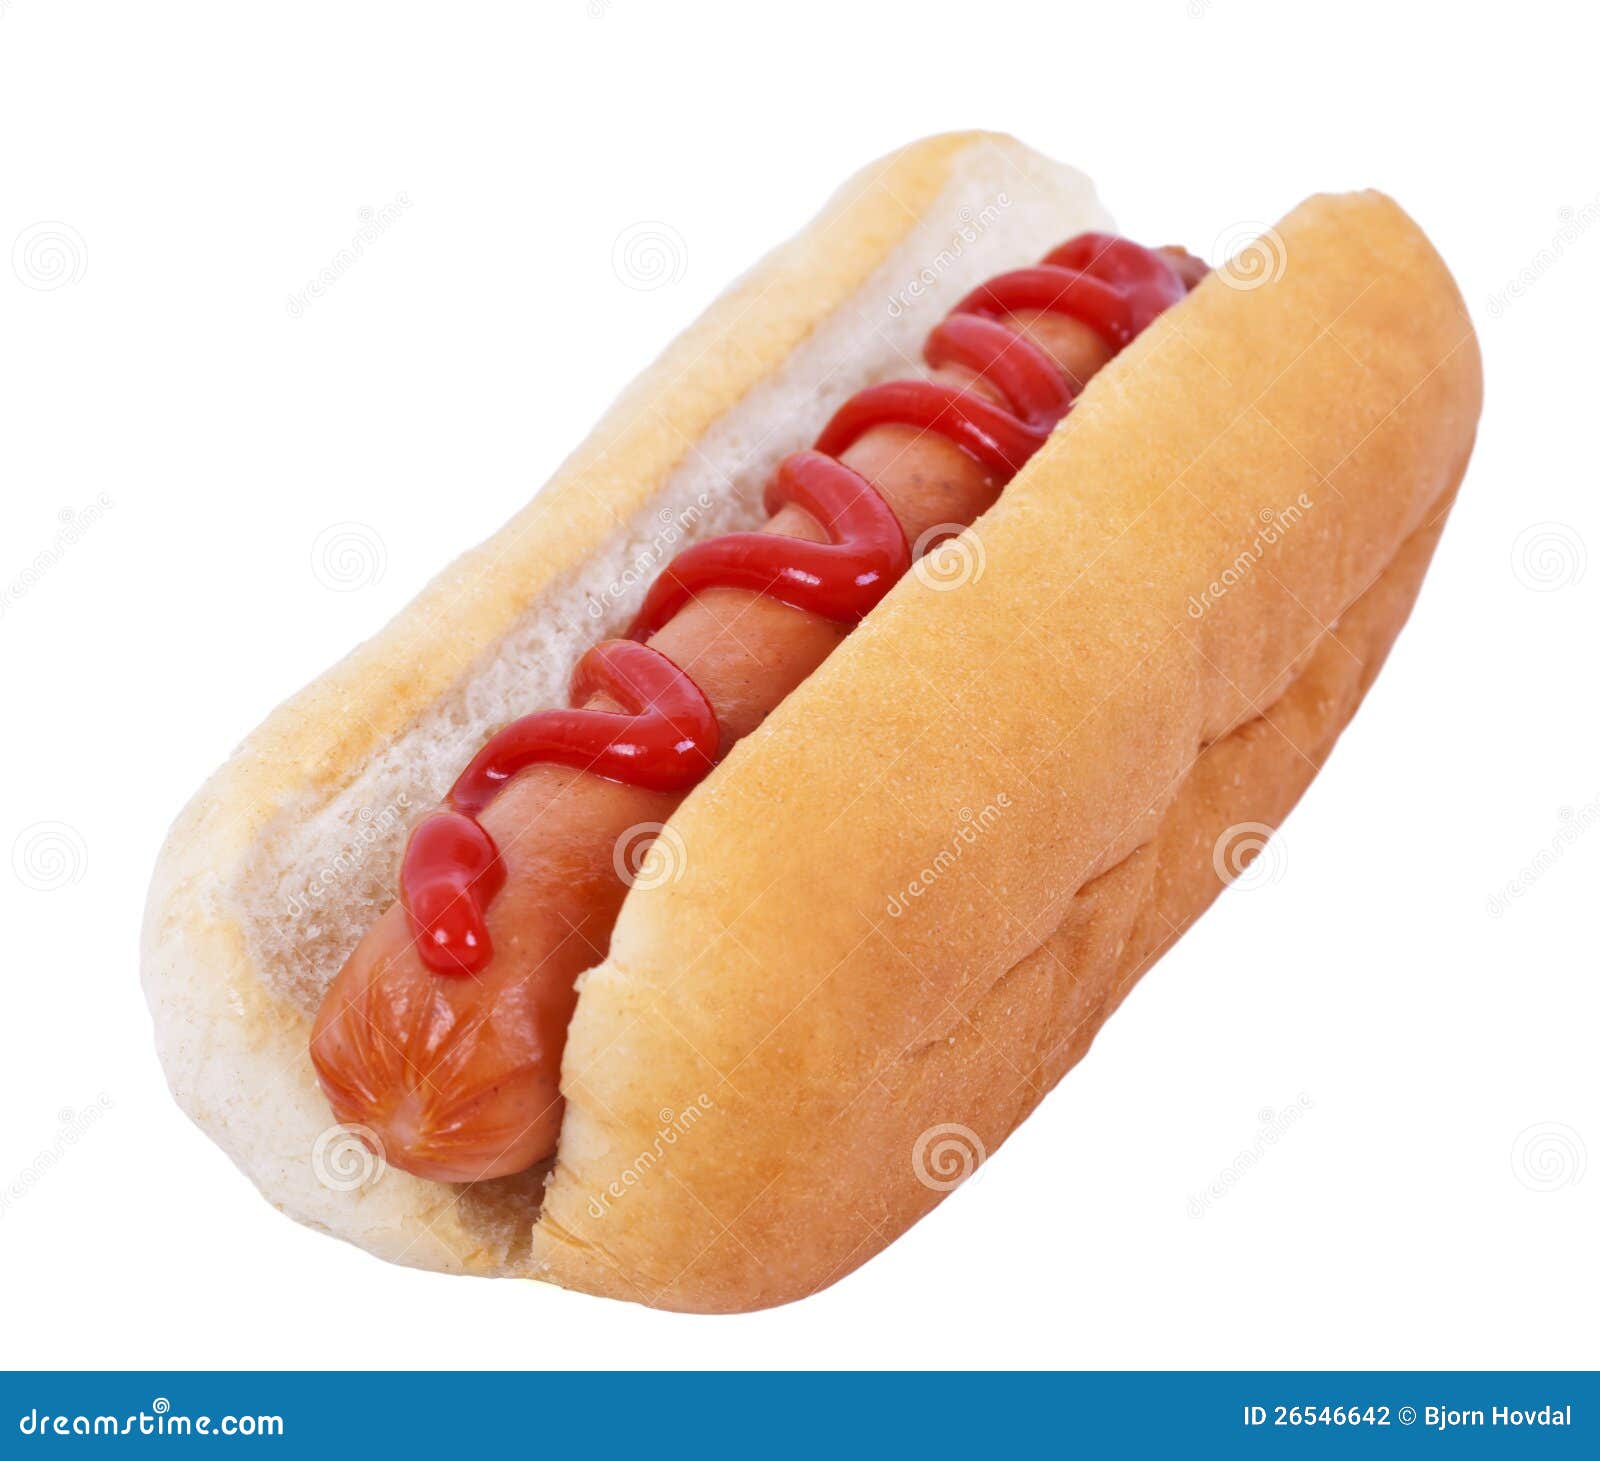 hot-dog-ketchup-26546642.jpg